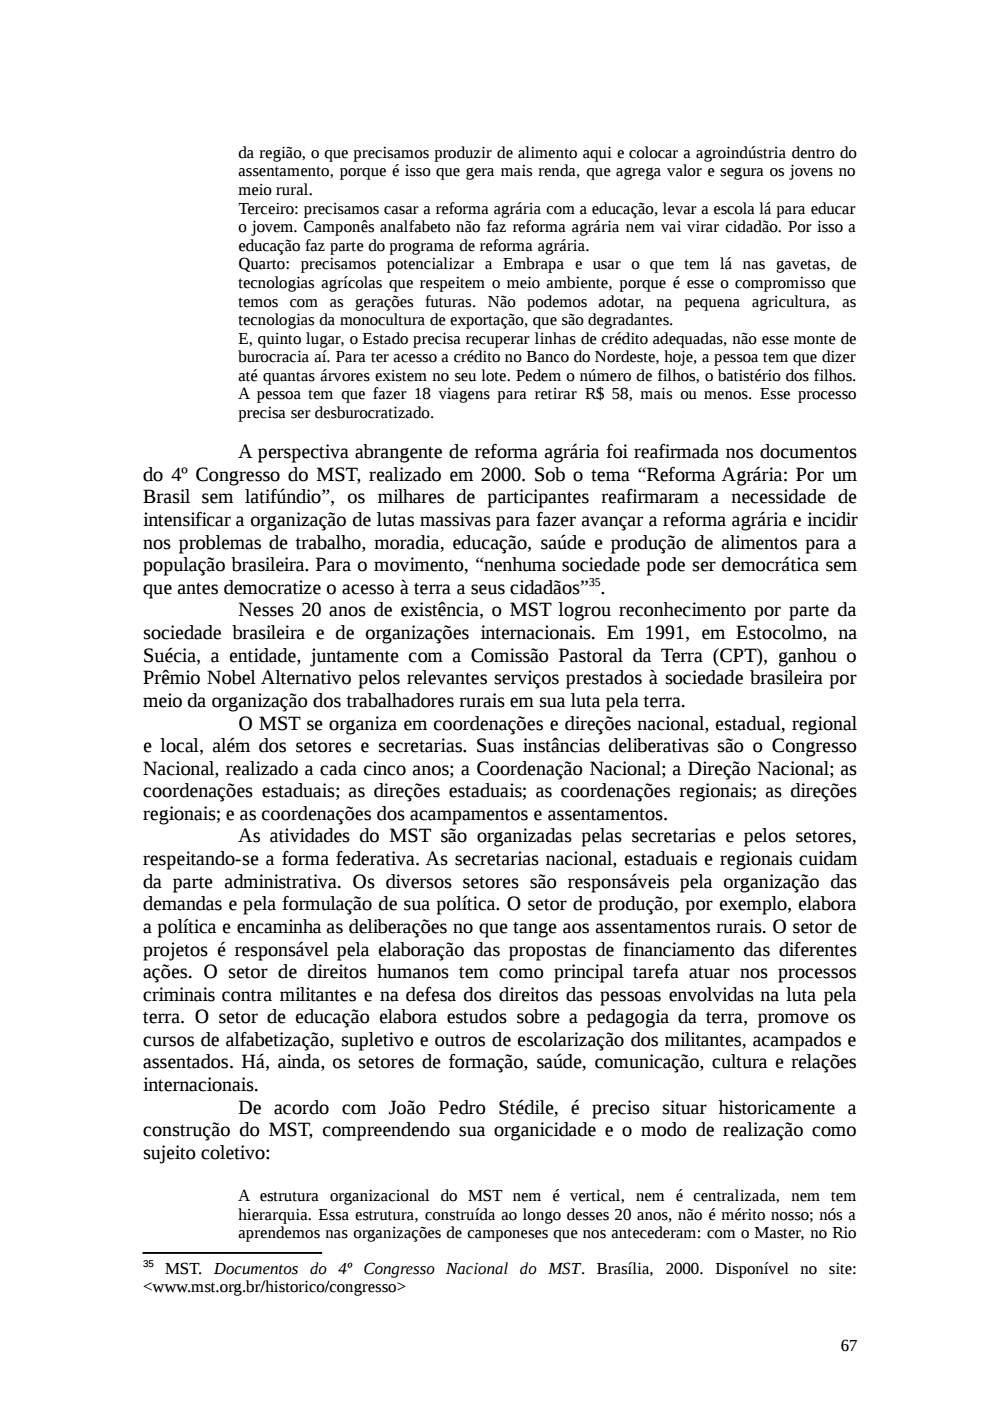 Page 67 from Relatório final da comissão